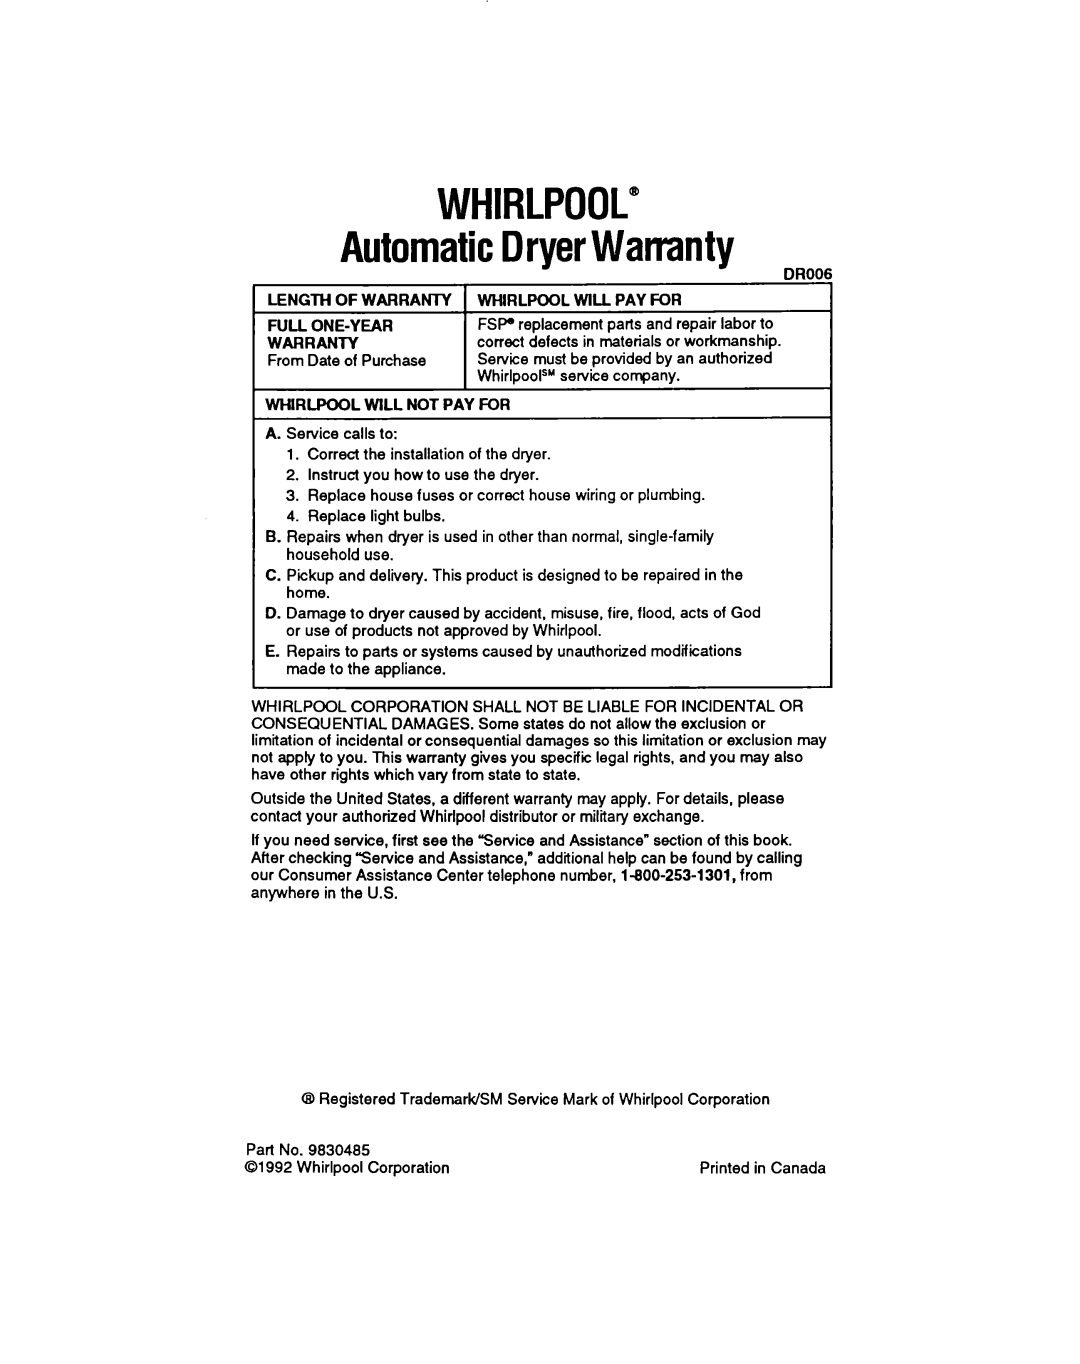 Whirlpool LGR3422A, LDR3422A manual WHIRLPOOL” AutomaticDryerWarranty 